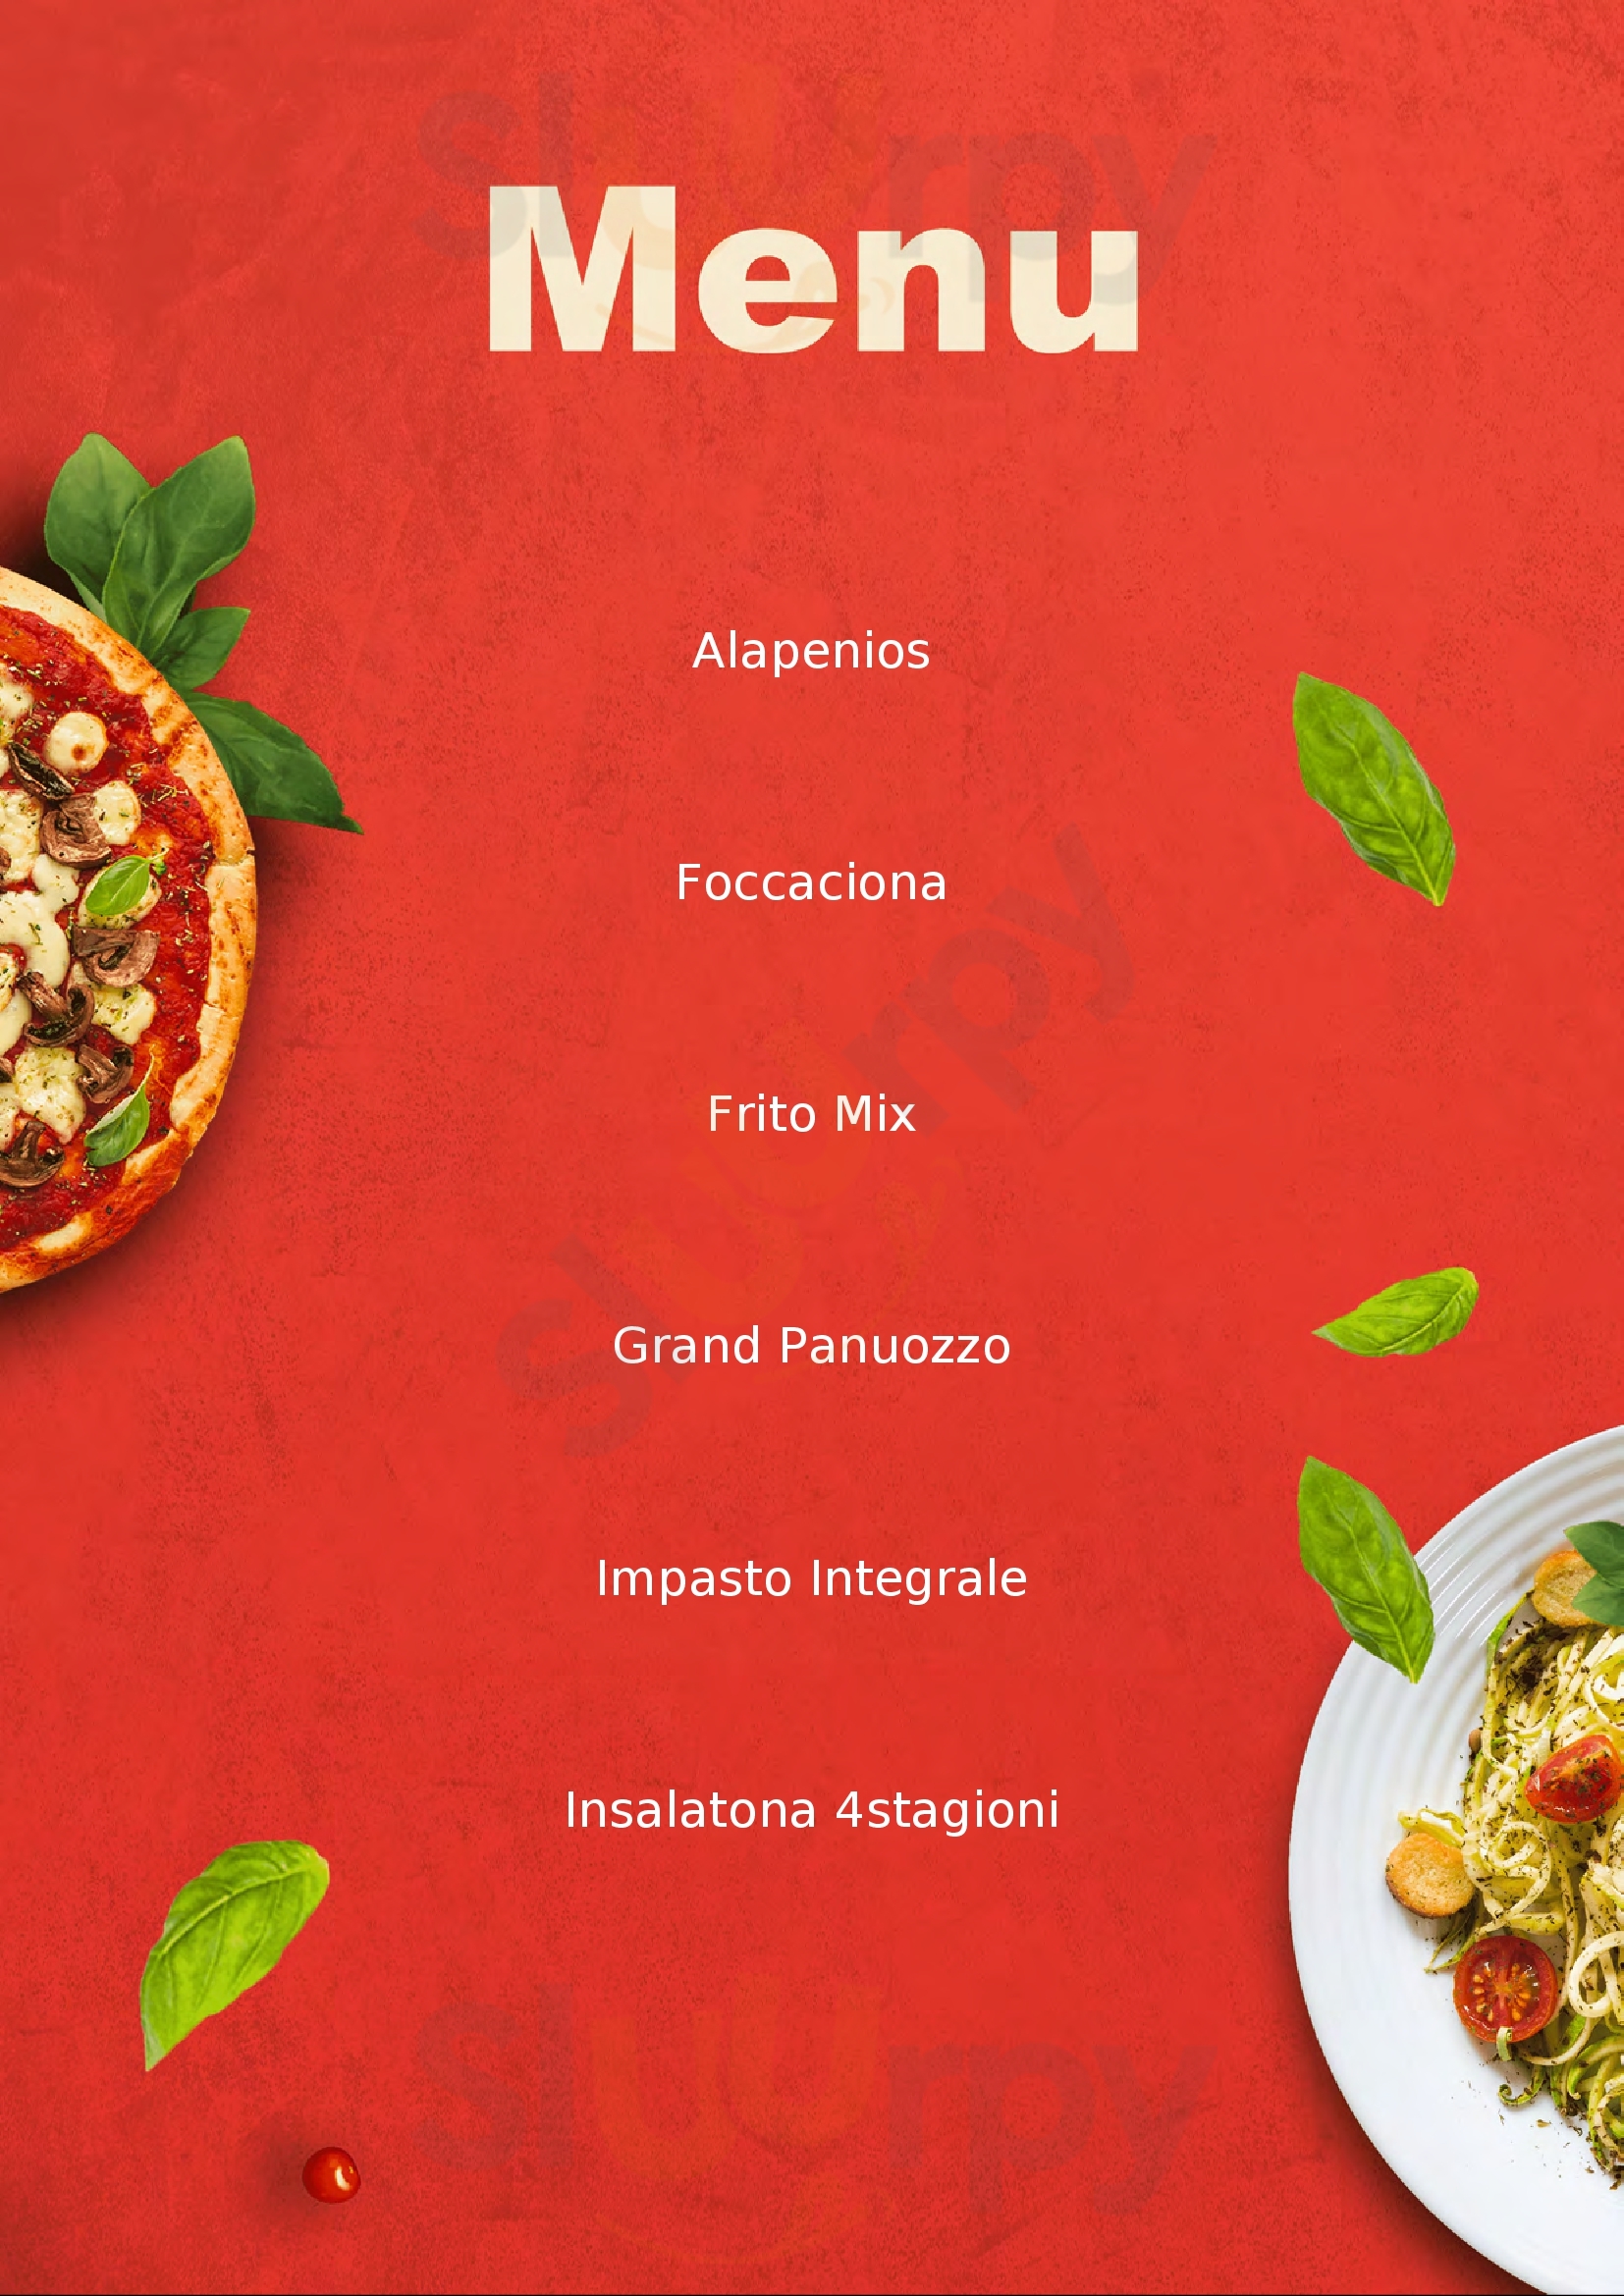 Pizzaiello Aiello del Friuli menù 1 pagina